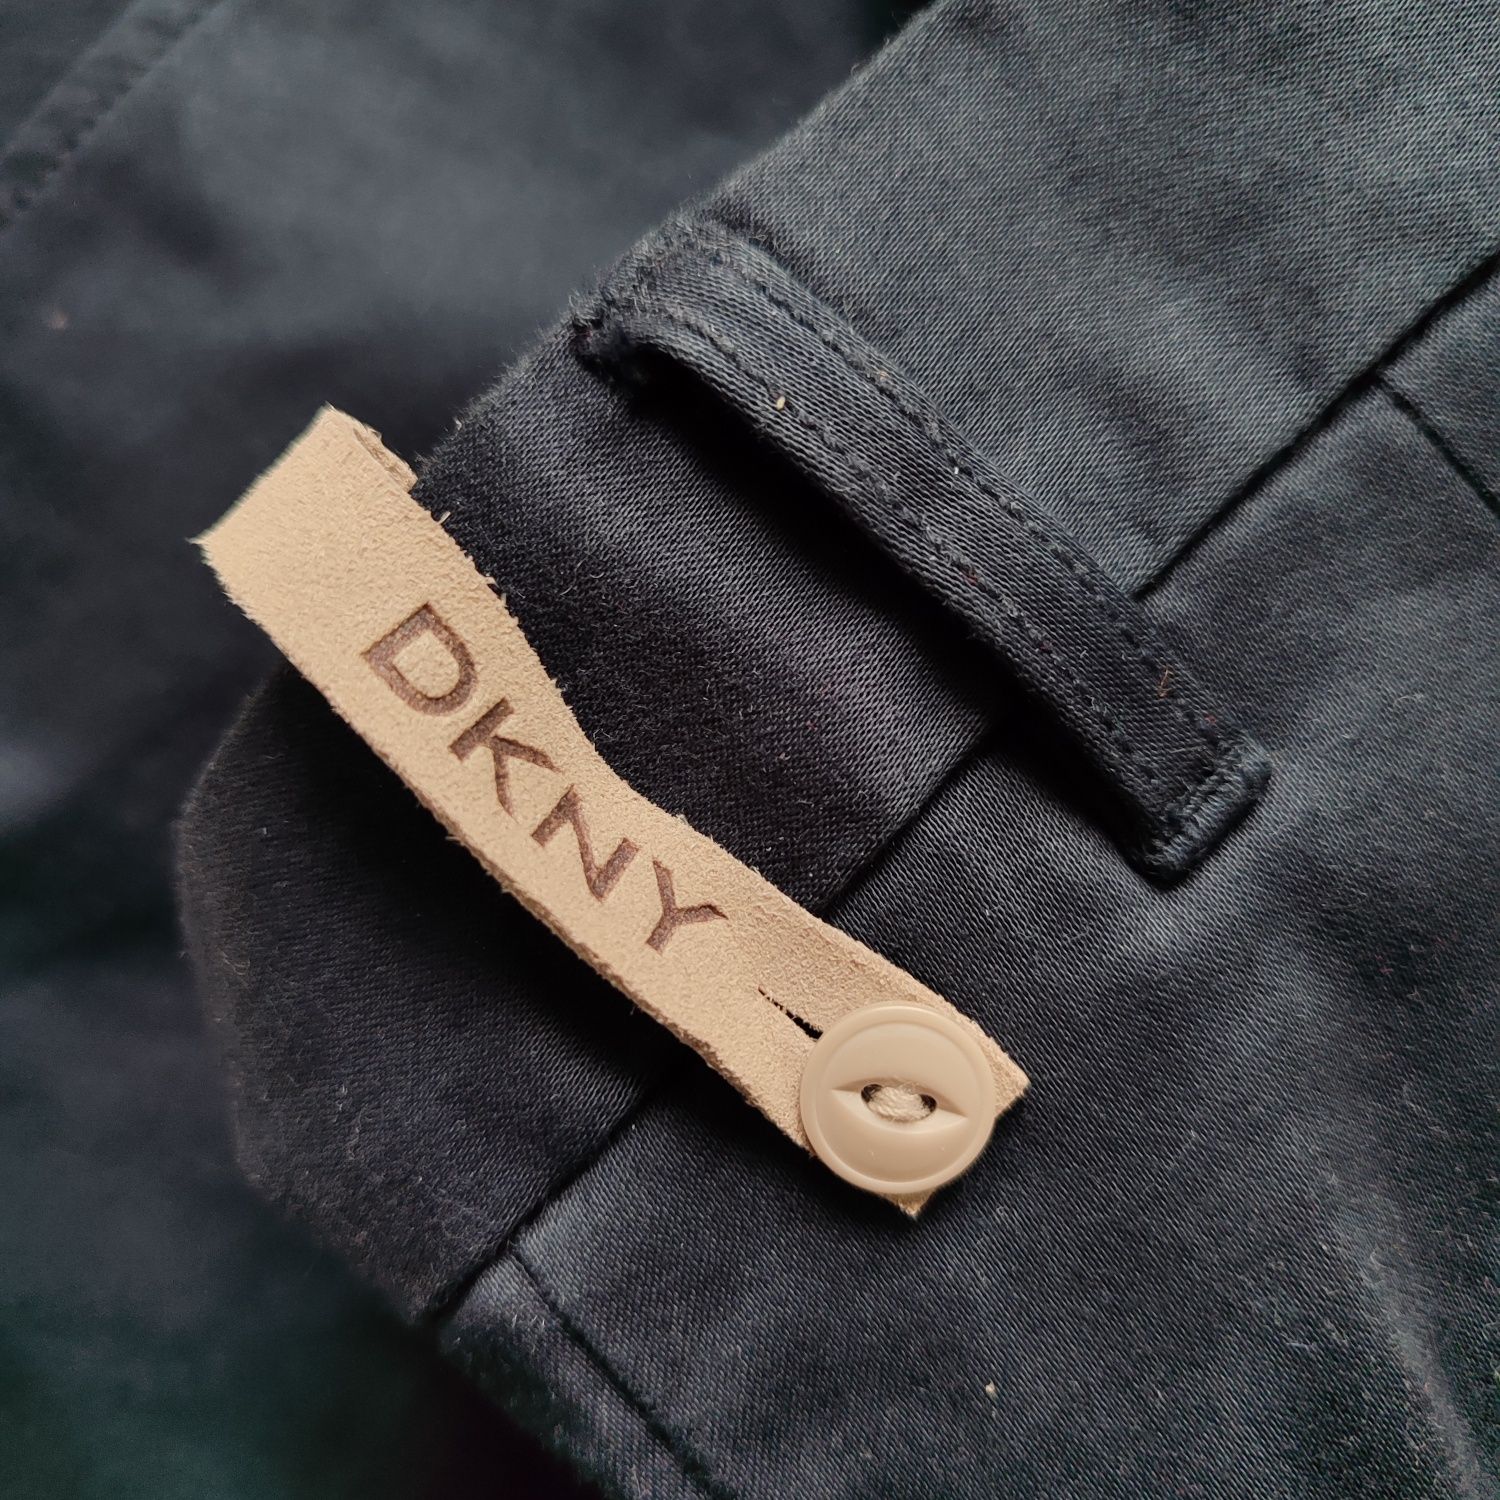 Spodnie męskie DKNY 32R casual wyjściowe ciemny granat chinosy komunia